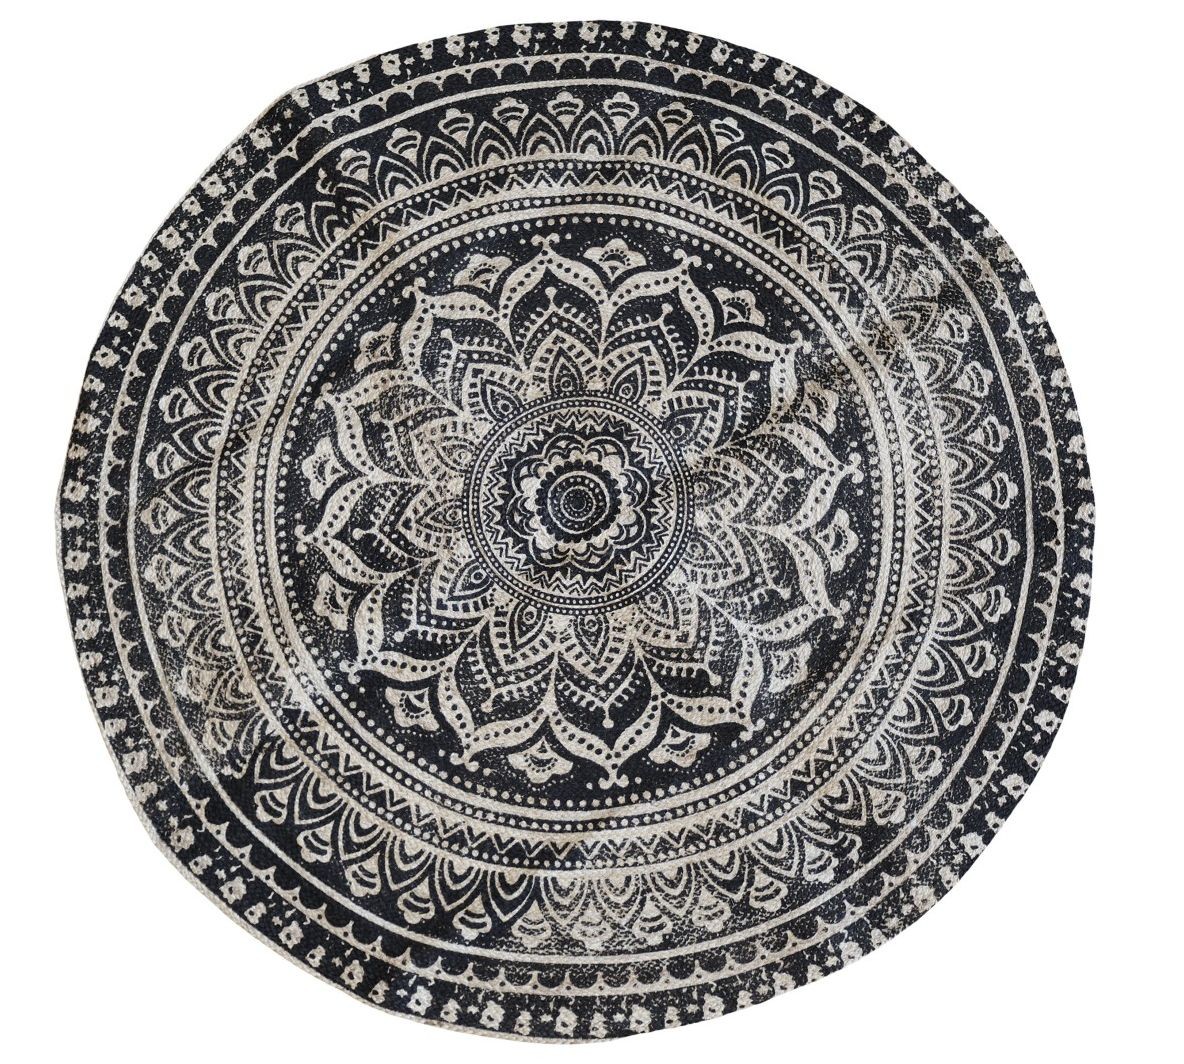 Přírodně - černý kulatý jutový koberec s ornamentem Ornié - Ø 160 cm 16886-24